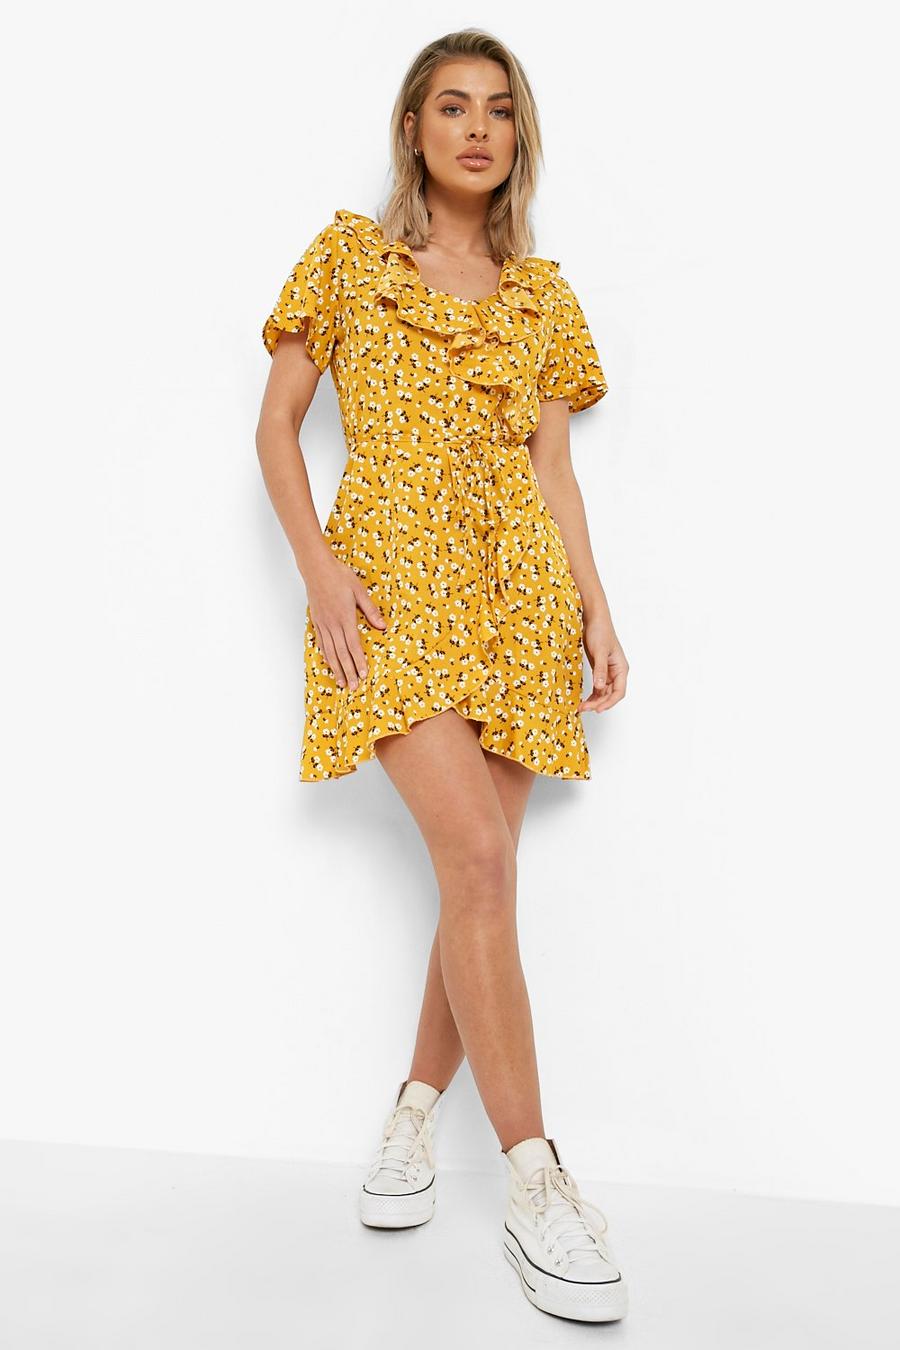 חרדל amarillo שמלת תה פרחונית שובבה ארוגה עם מעטפת בחזית ומלמלה